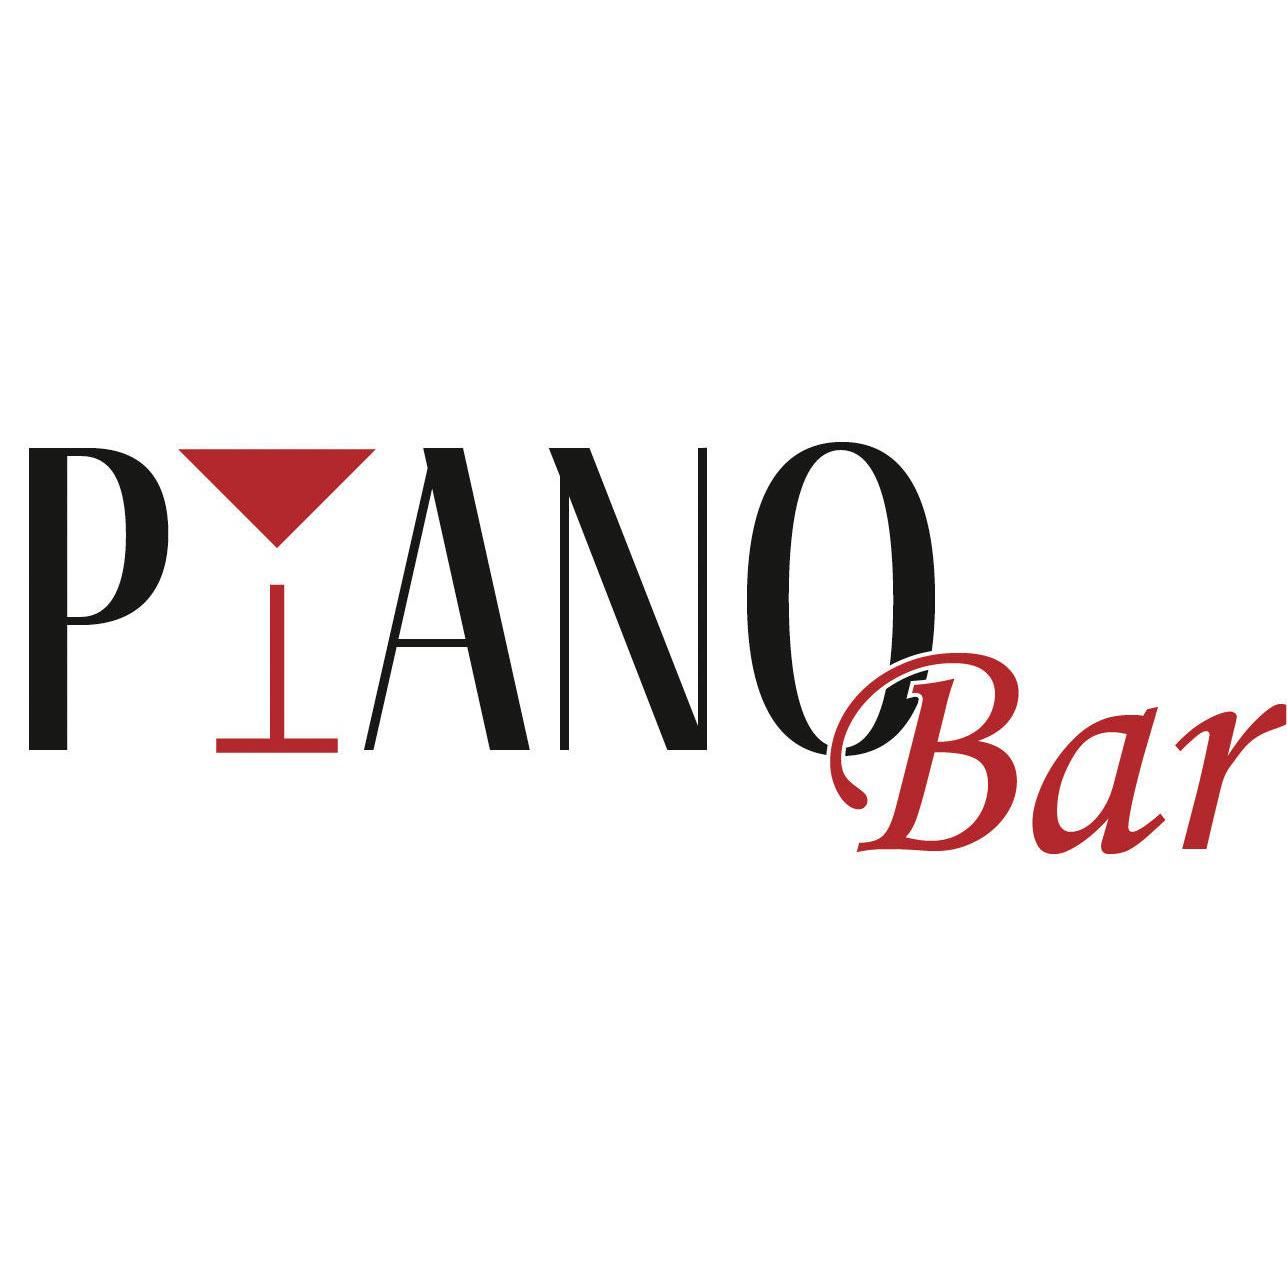 Pianobar in Ingolstadt an der Donau - Logo